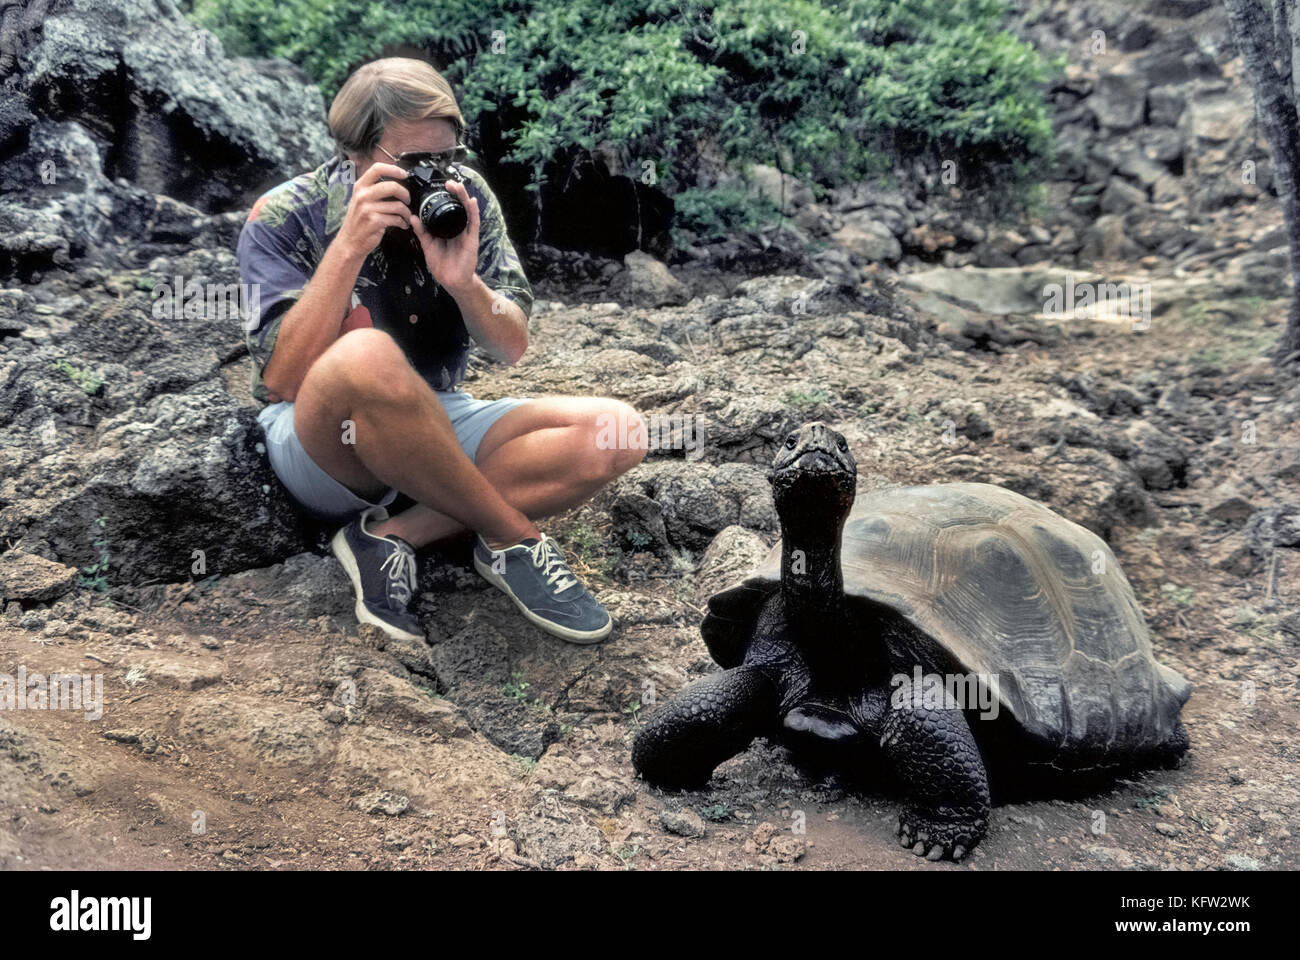 Una tortuga gigante de Galápagos (Chelonoidis nigra) se mueve lentamente pasado un turista que aprovecha la oportunidad para disparar una fotografía en primer plano de los raros reptil que es nativa de las Islas Galápagos (Archipiélago de Colón), una provincia del Ecuador en el océano Pacífico frente a la costa occidental de América del Sur. Las 20 islas y sus tortugas se hicieron famosas por el naturalista inglés Charles Darwin, quien formuló su teoría de la evolución basada en su visita a las Islas Galápagos en 1835. Hoy el 15 especies de esos enormes tortugas cuyo número se estima en 20.000 a 25.000. Foto de stock